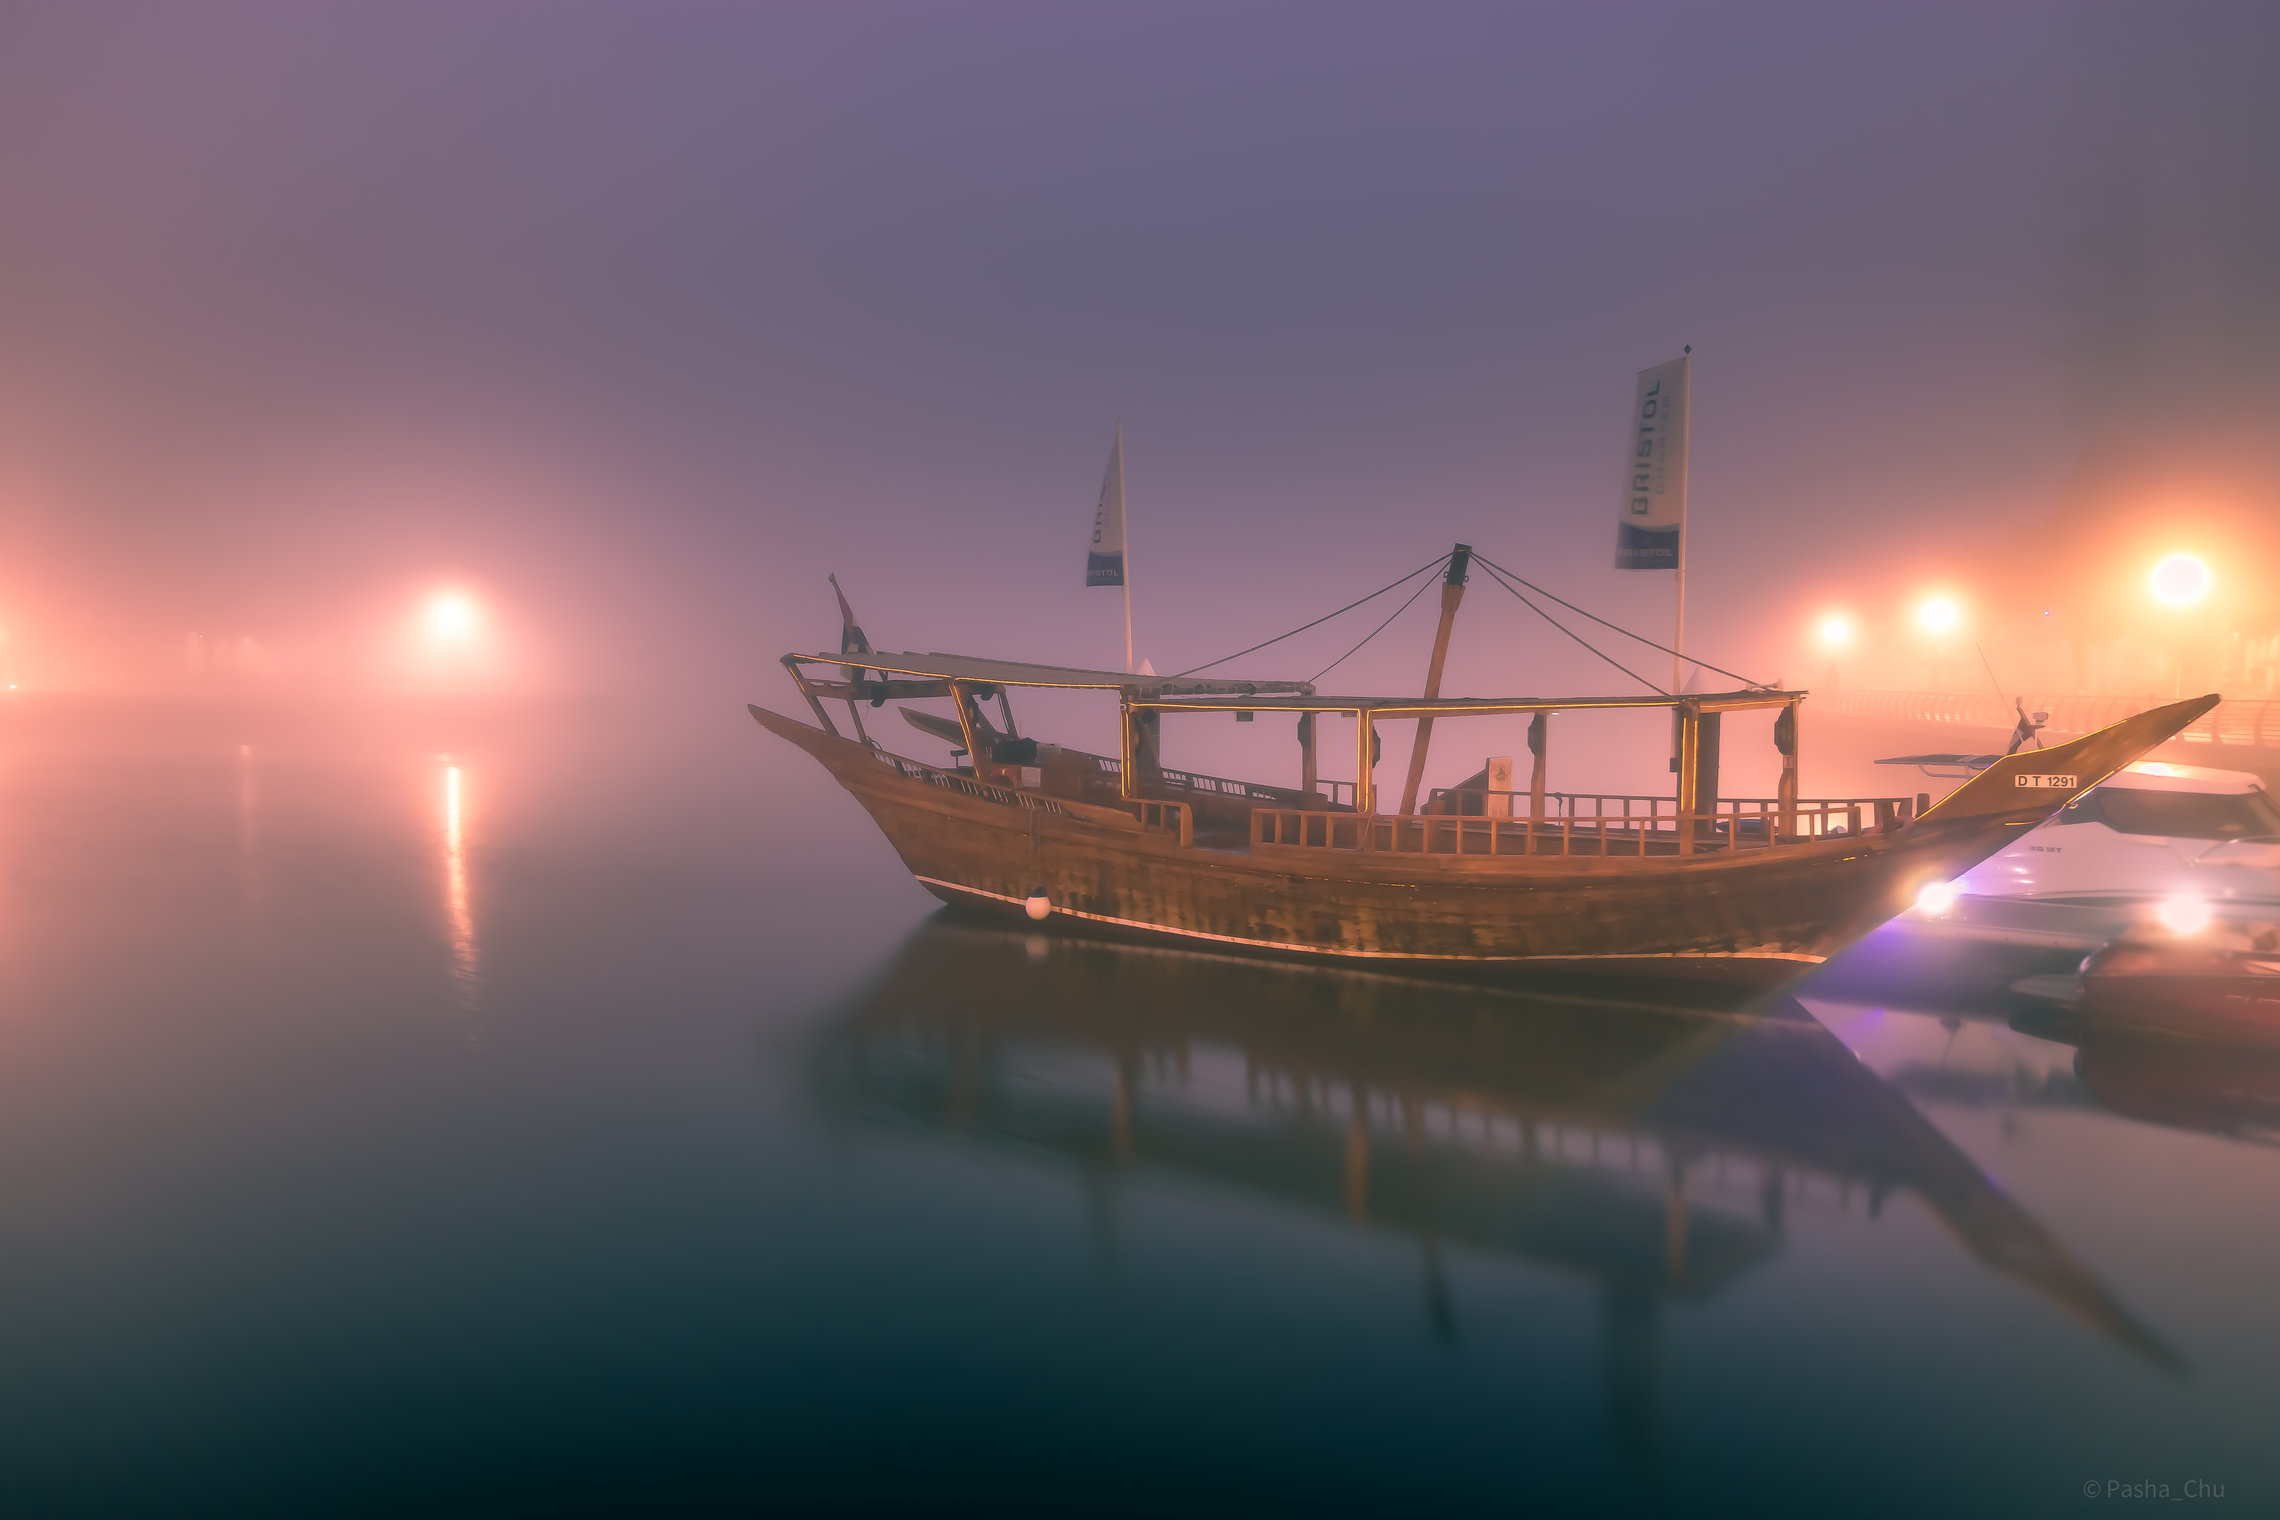  Лодка в тумане